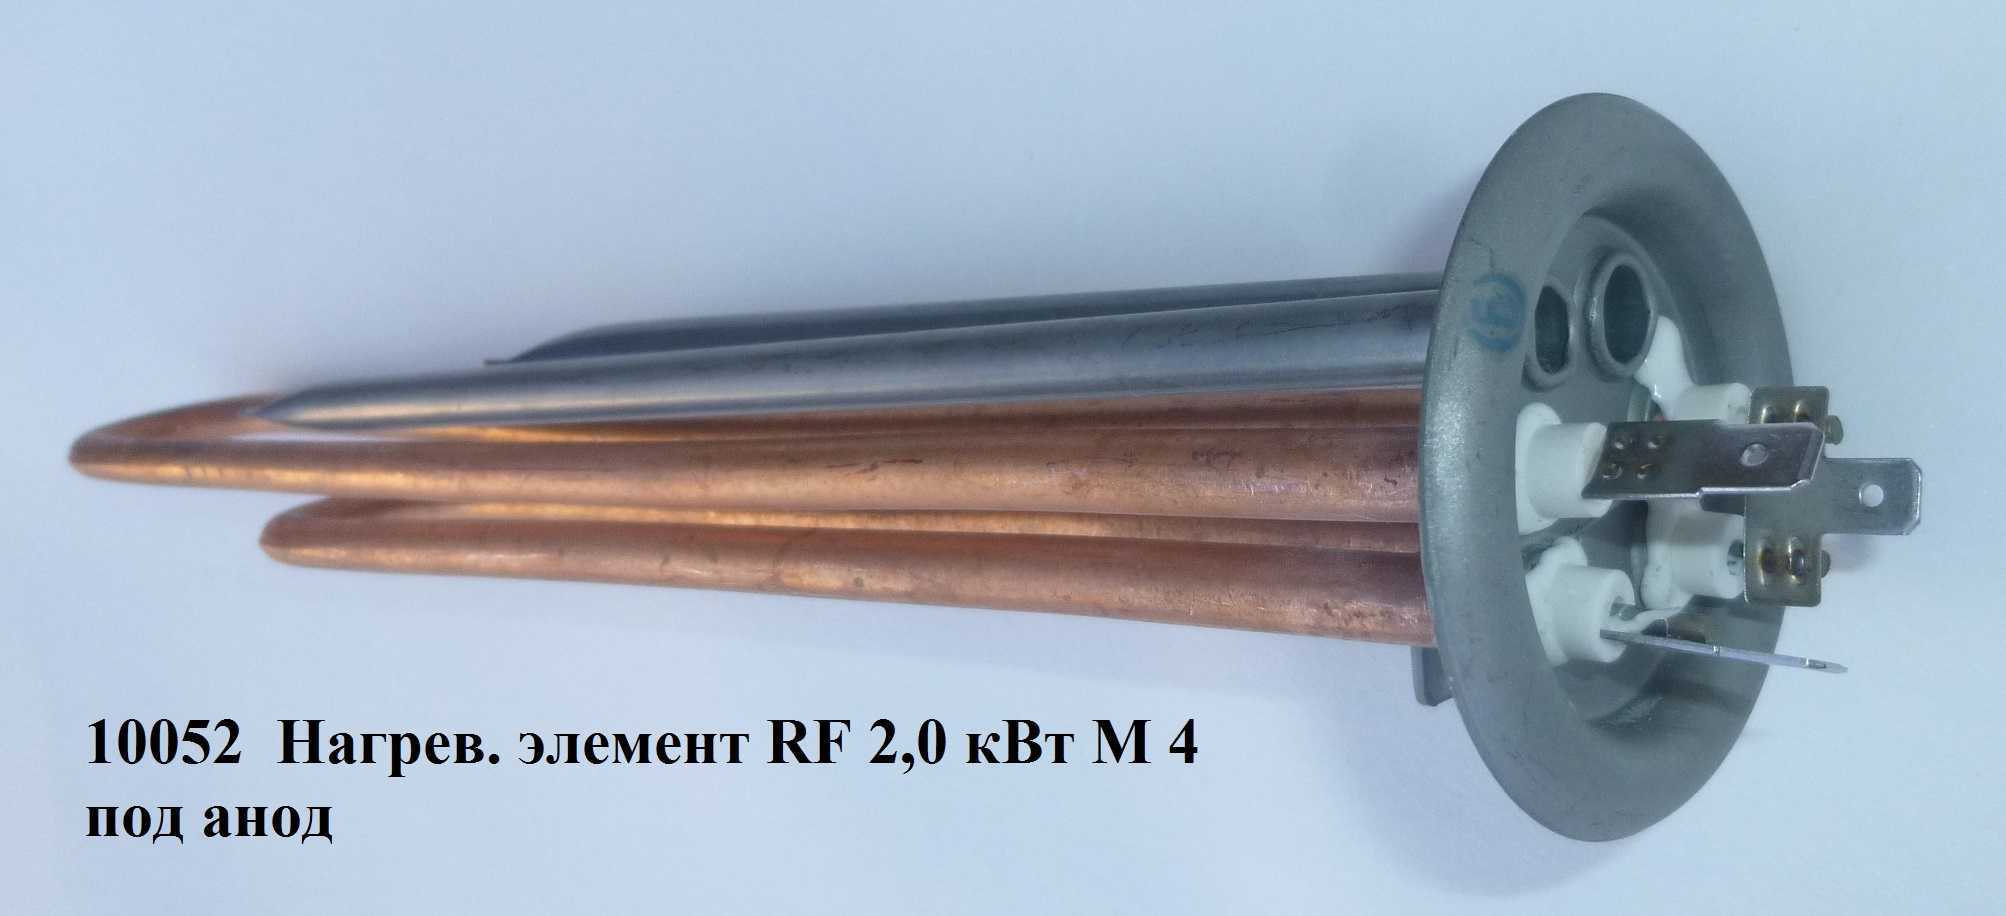 ТЭН 2000Вт (1300+700Вт) RF-64 (медь Thermowatt), под анод M4 - Термекс 066052